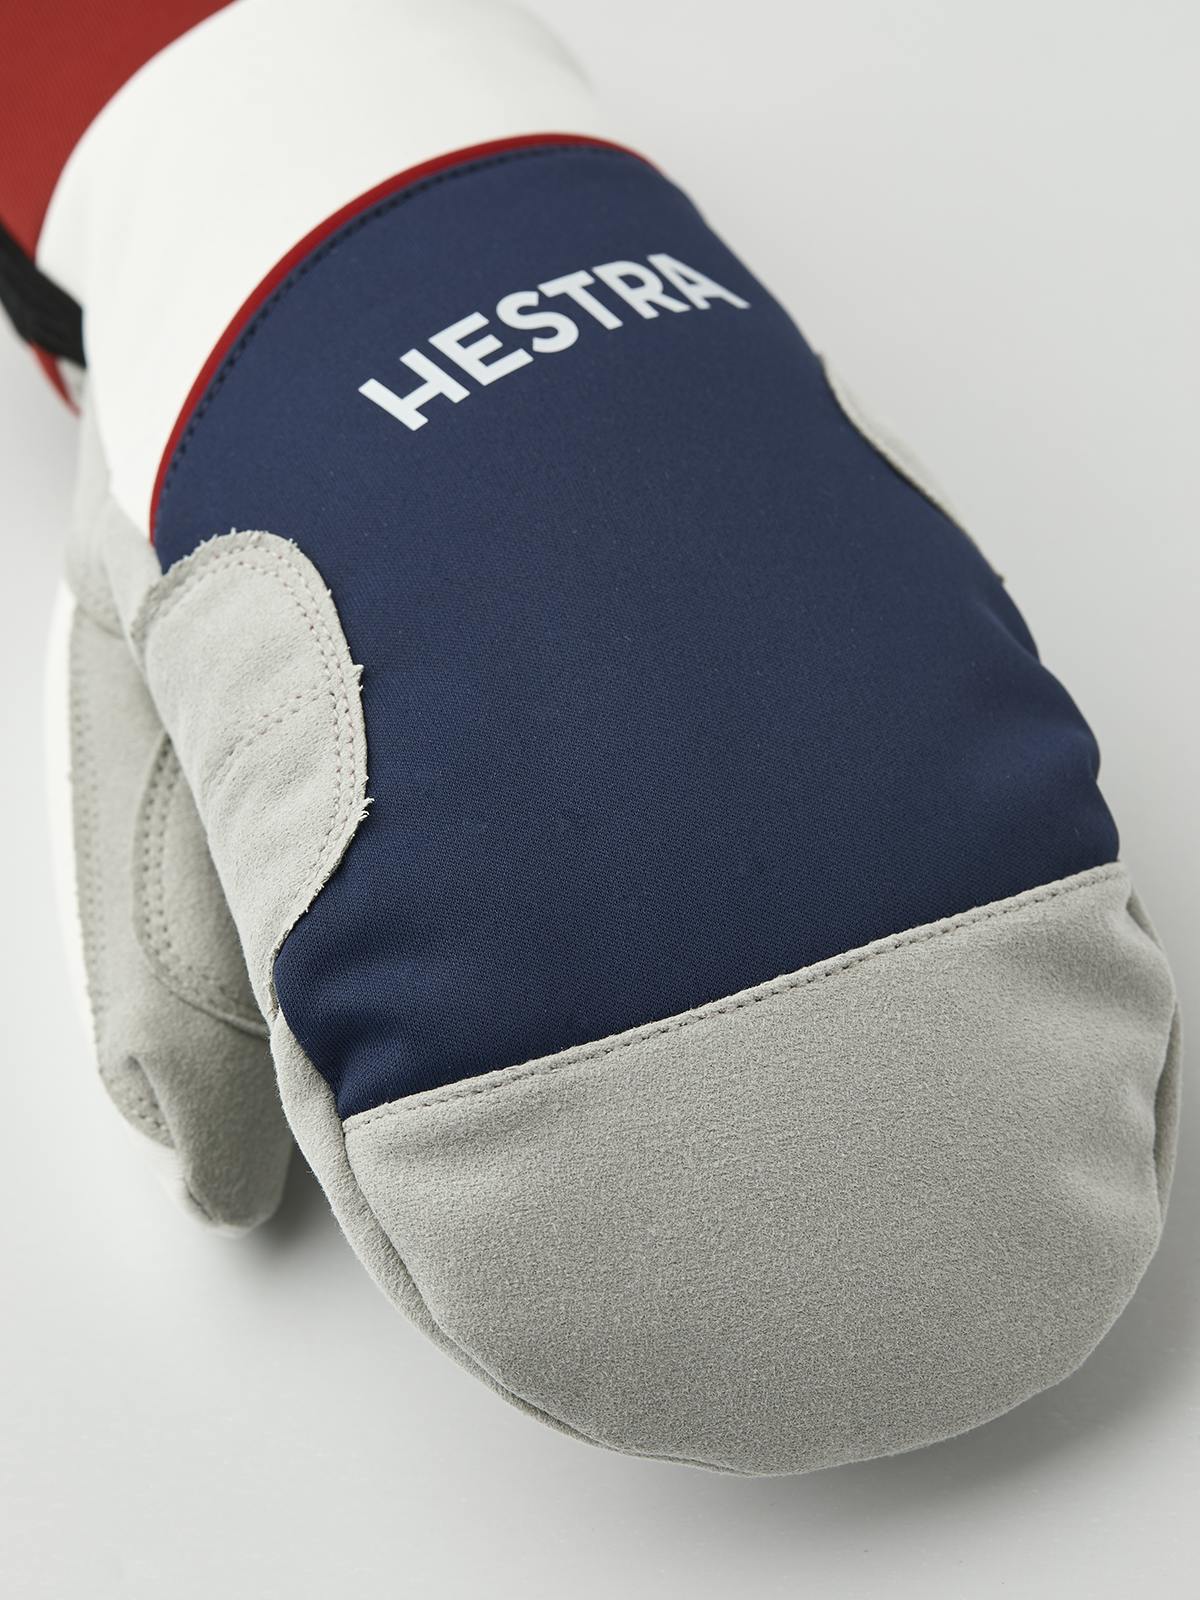 HESTRA - Comfort Tracker - Mitt. Marin & ivory